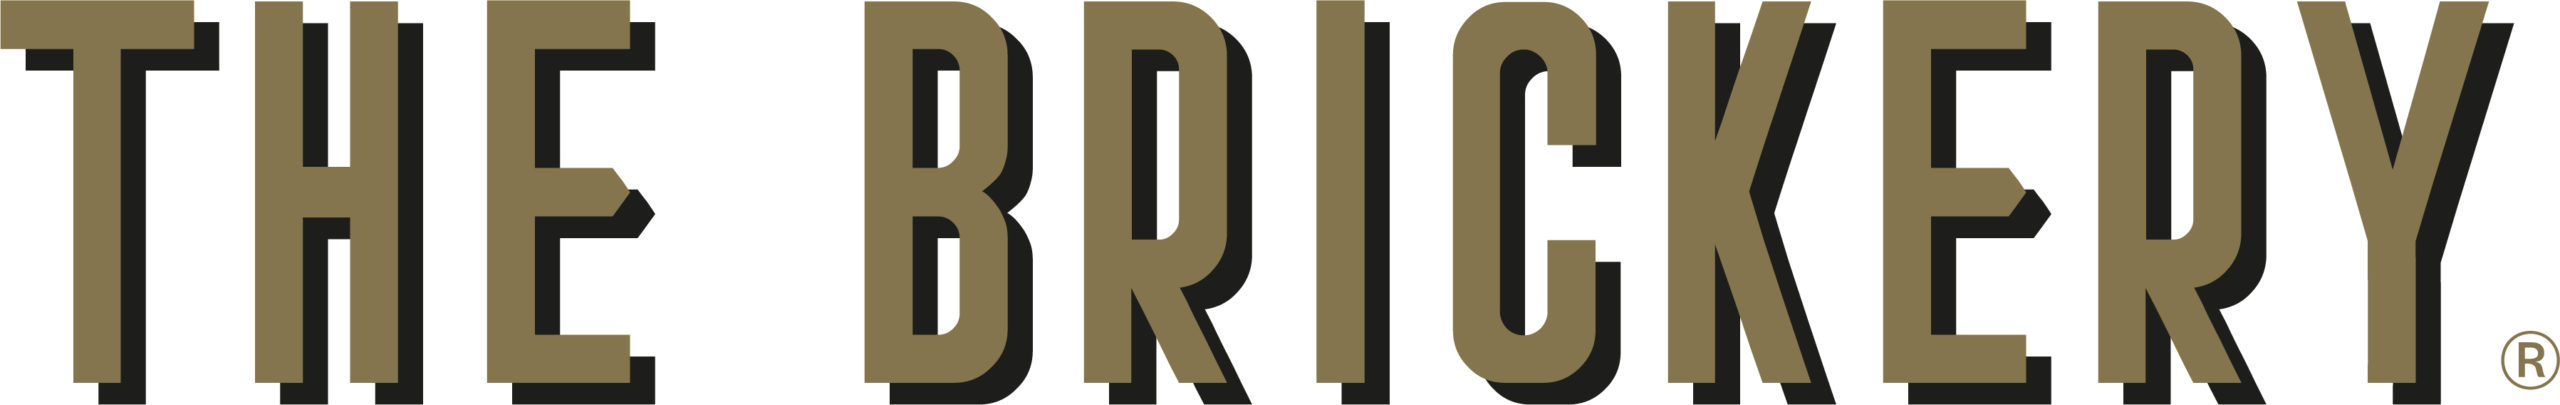 The-Brickery-Shadow-Logo-SPOT-GOLD